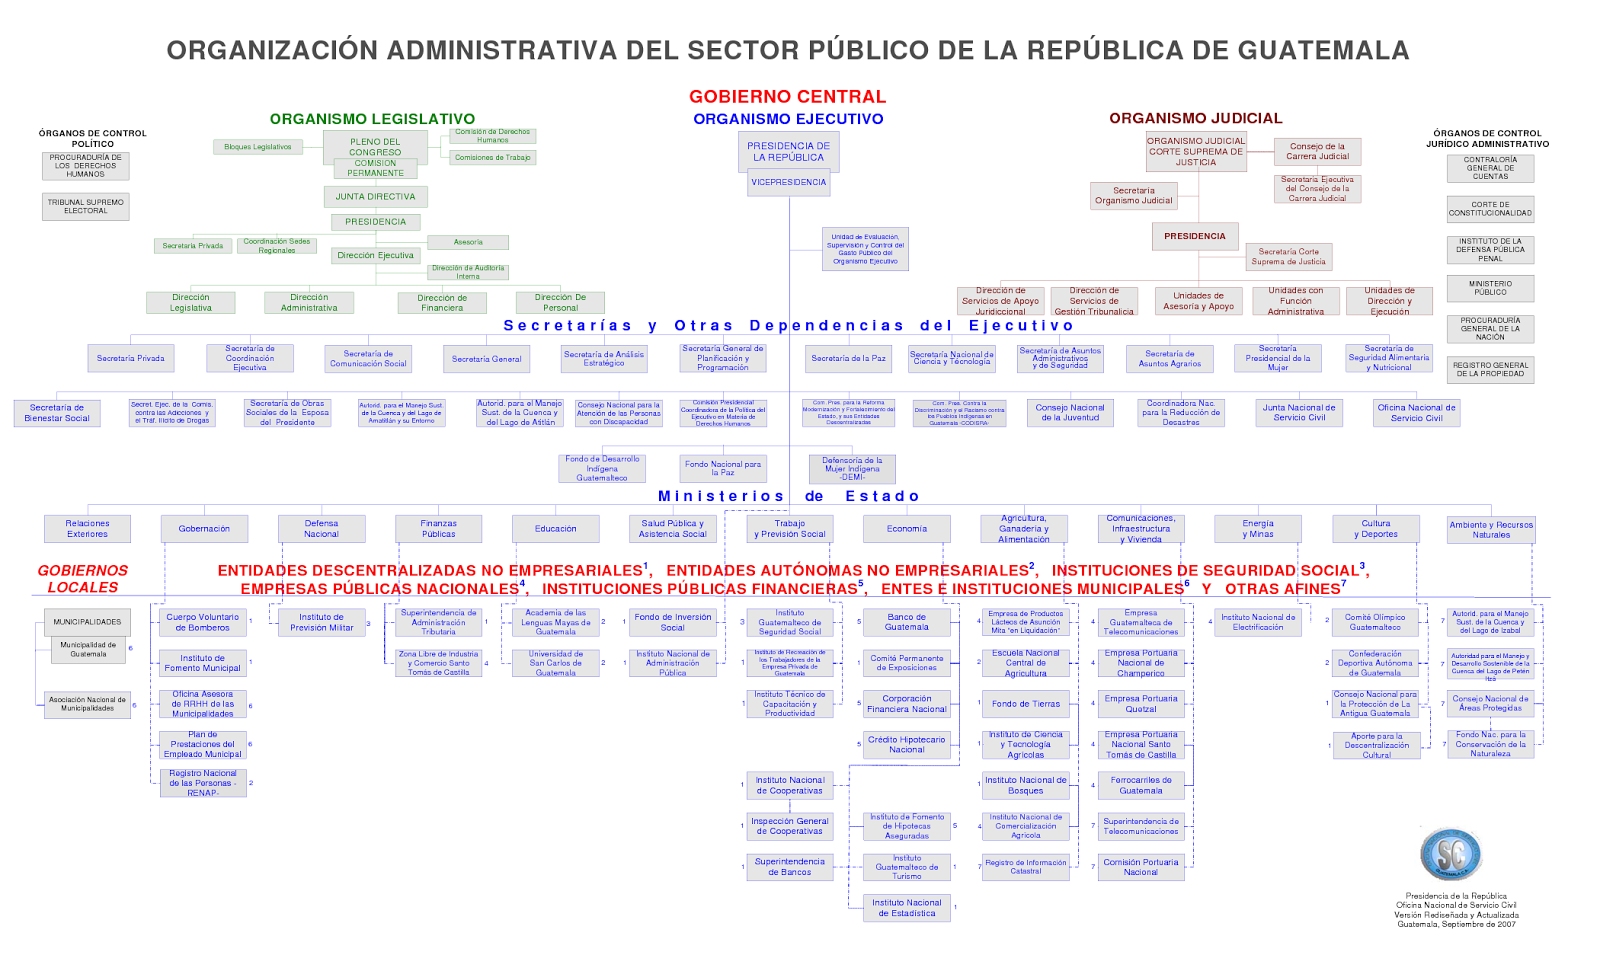 Sistemas Jurídicos Contemporáneos: Sistema latinoamericano